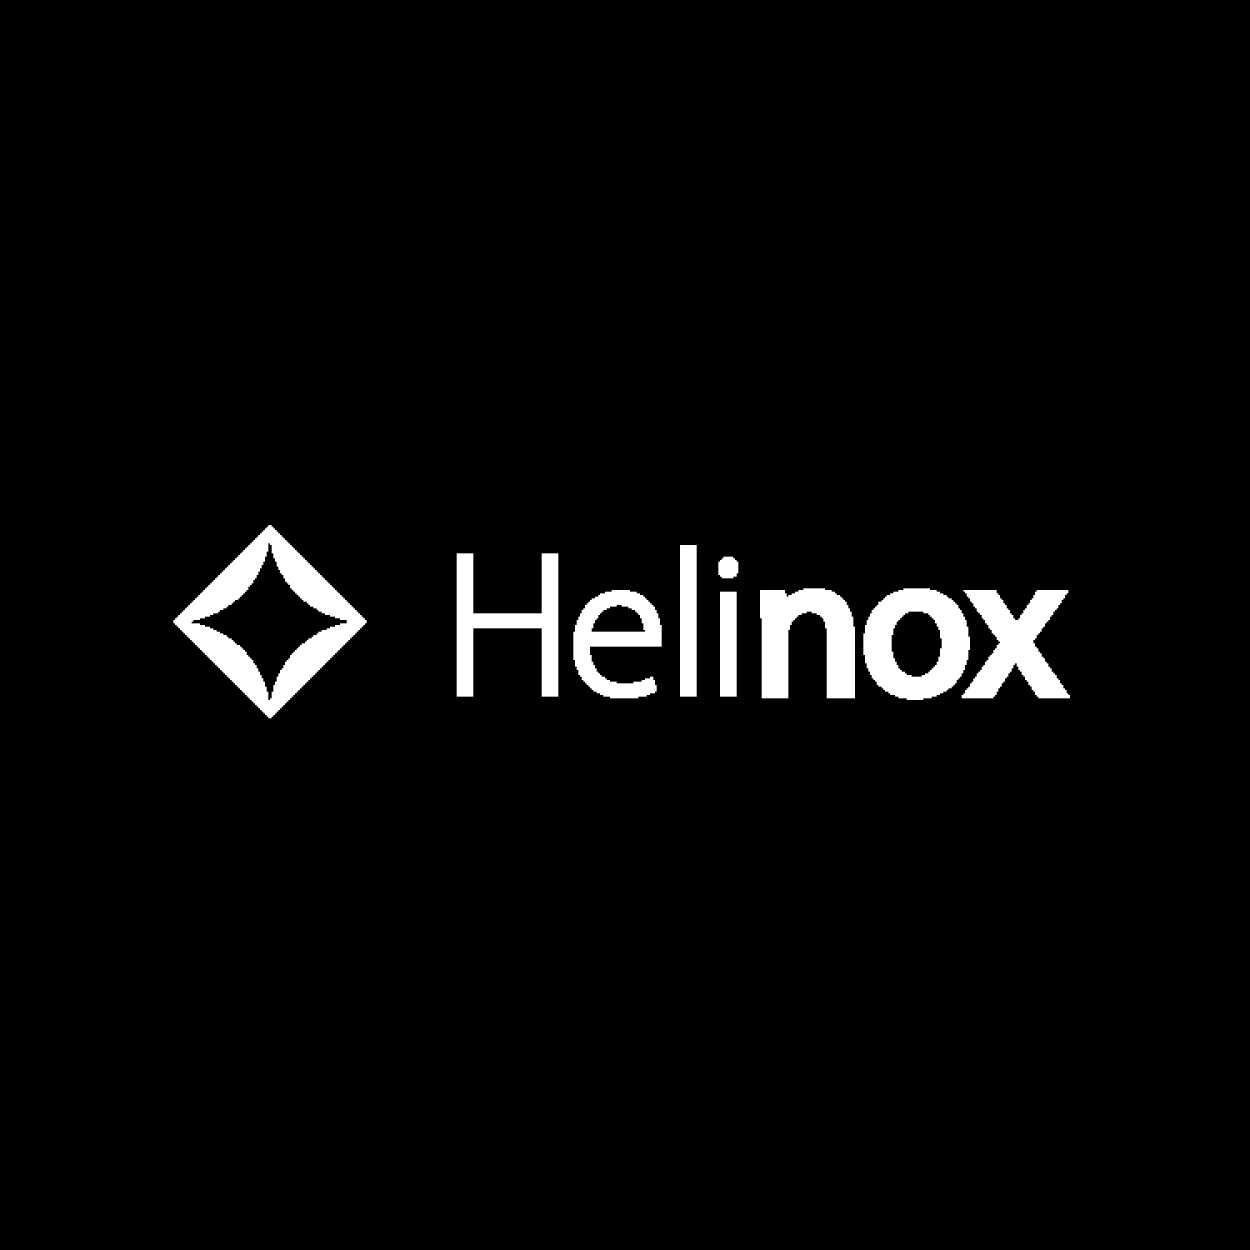 Helinox.jpg